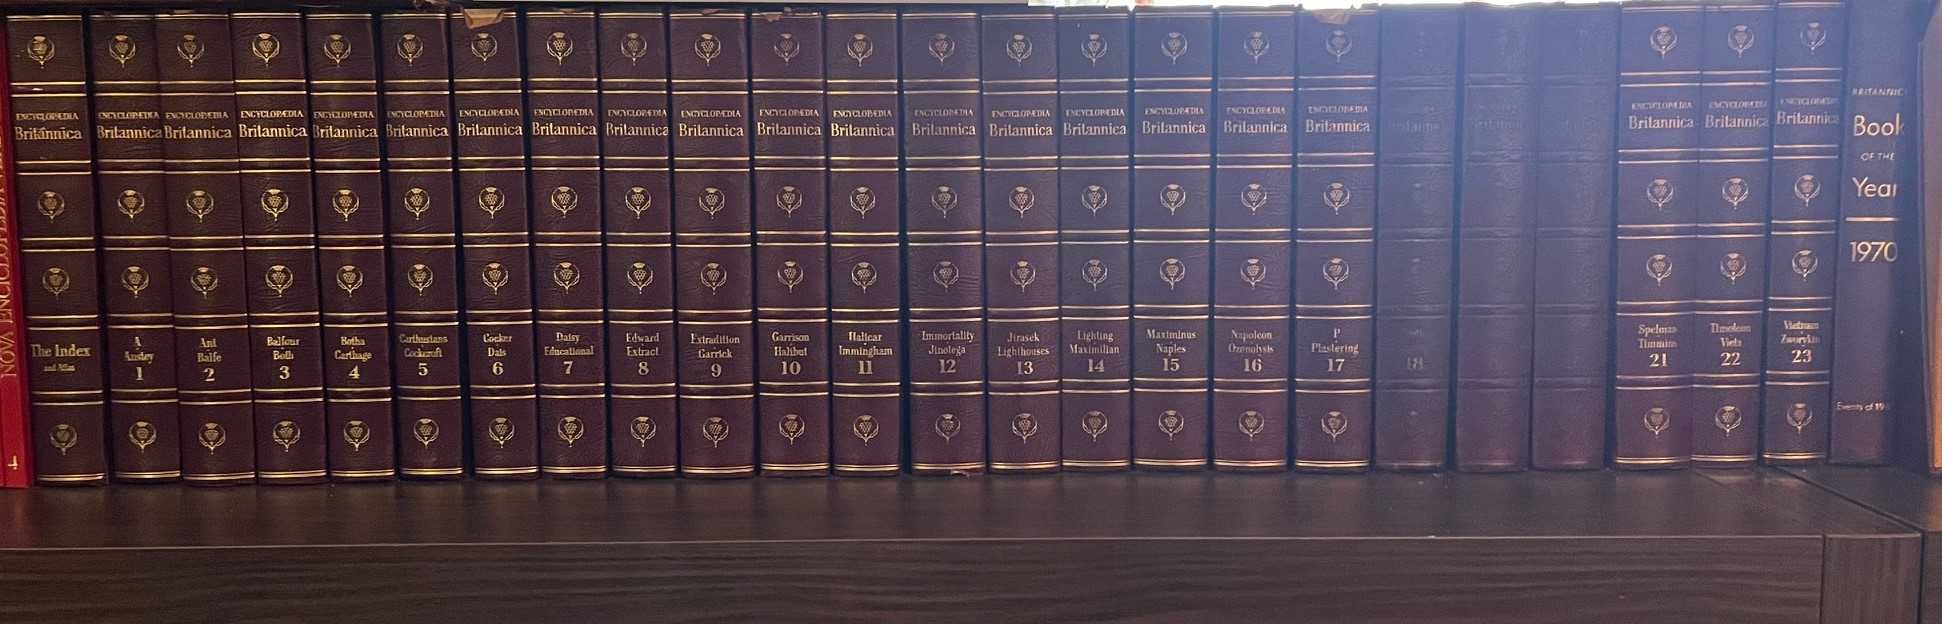 Enciclopédia Britannica - 1969 (Edição completa 23 Volumes)